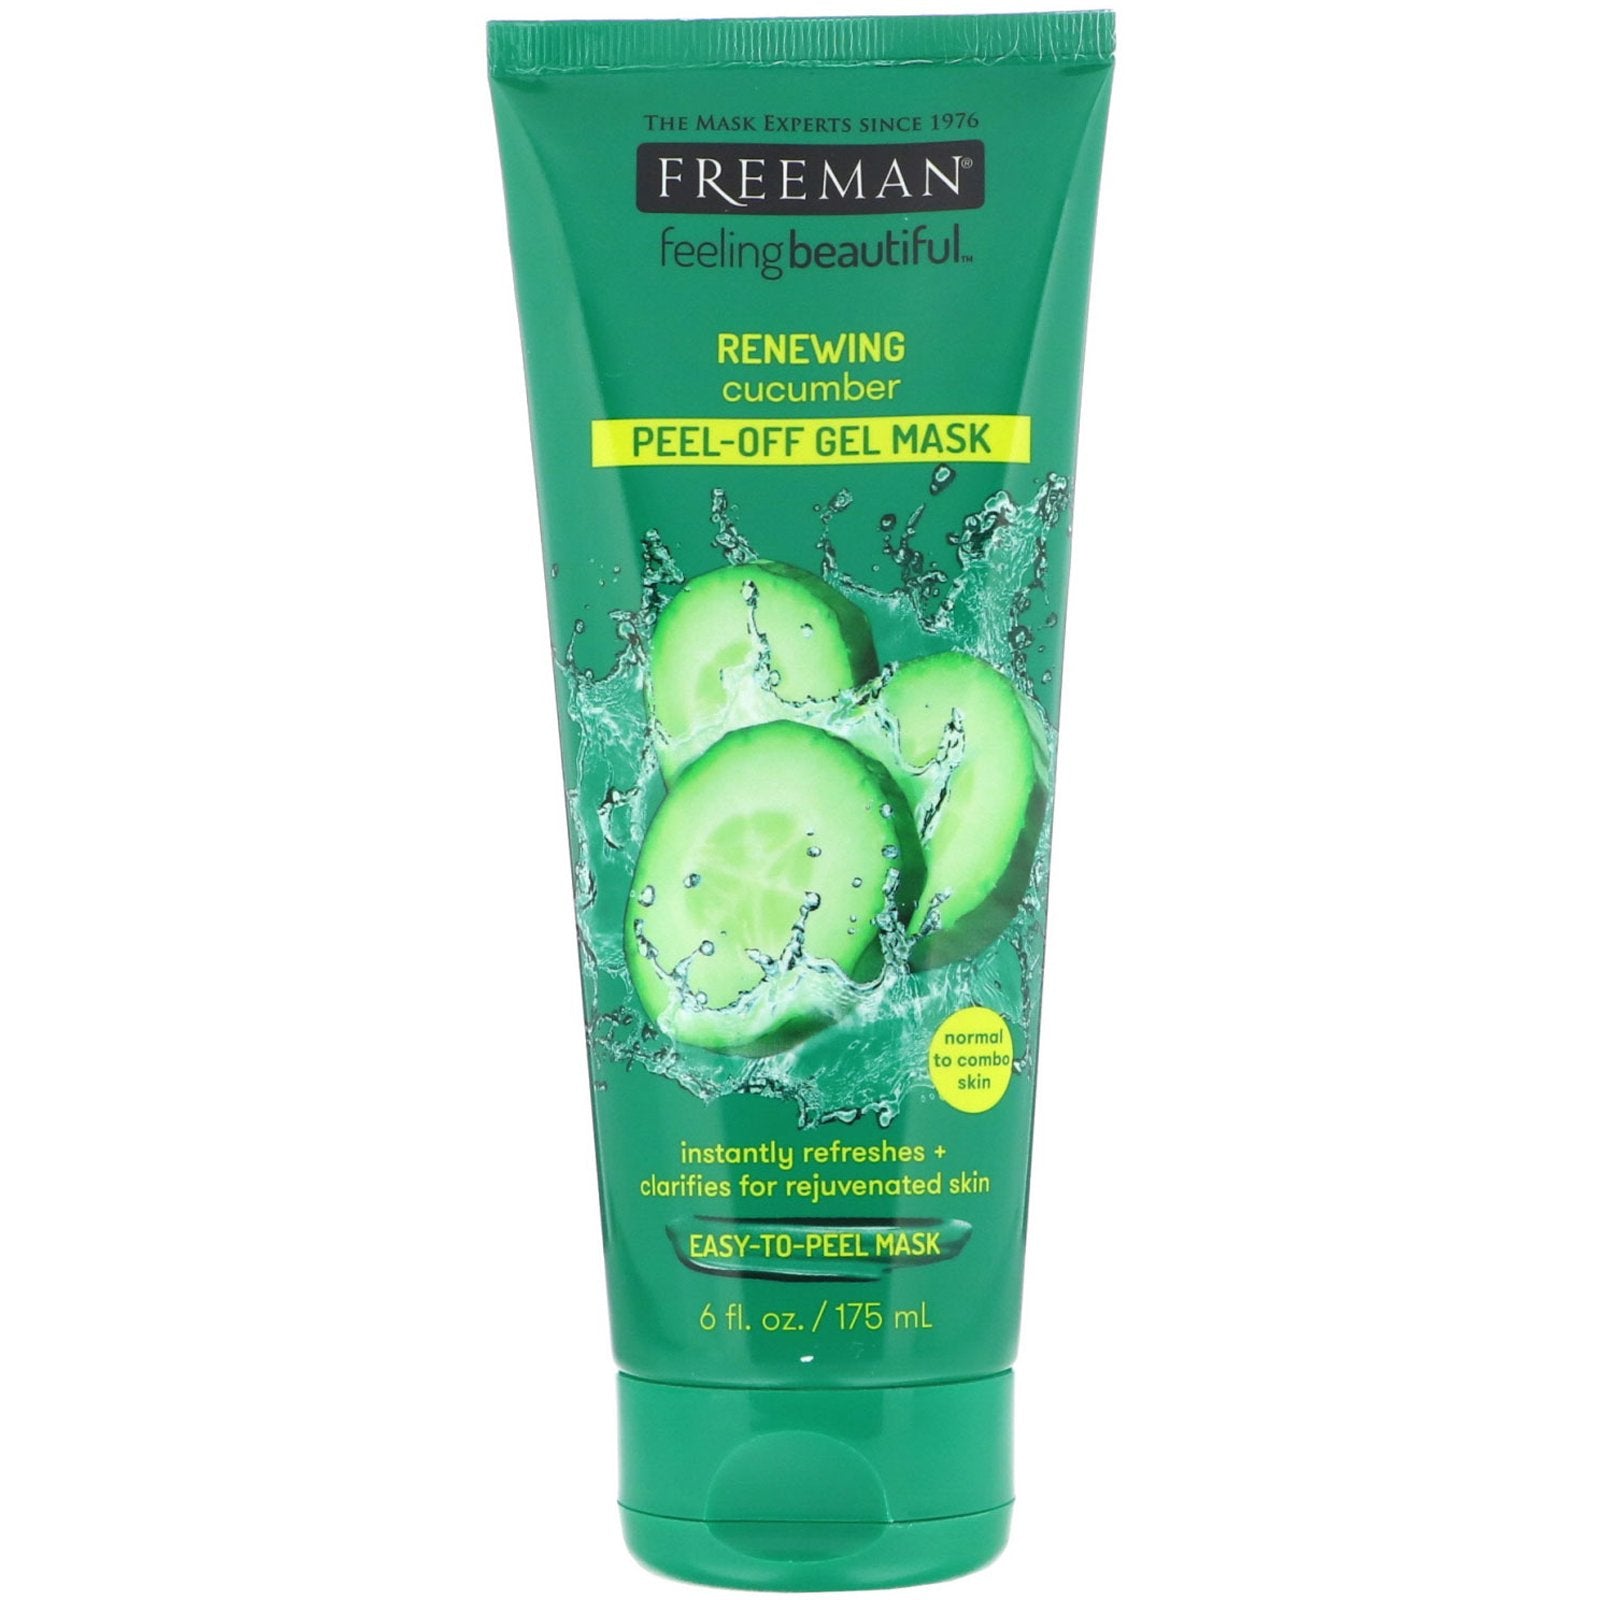 Freeman Beauty, Feeling Beautiful, Renewing Peel-Off Gel Mask, Cucumber, 6 fl oz (175 ml)